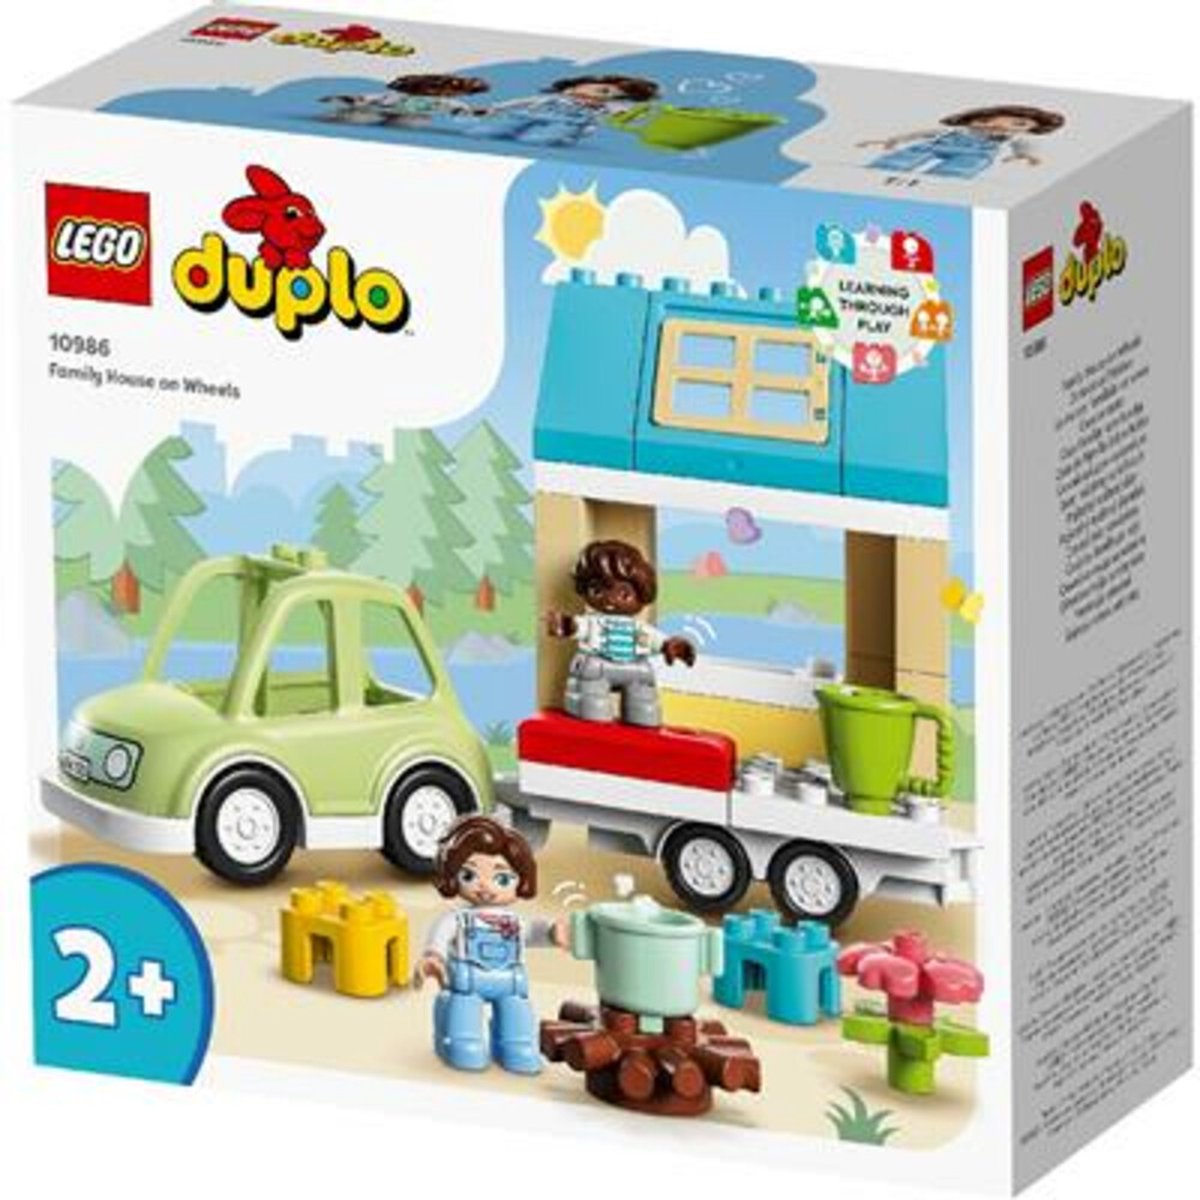 LEGO DUPLO Stad Familiehuis op wielen, Peuterspeelgoed - 10986 | bol.com